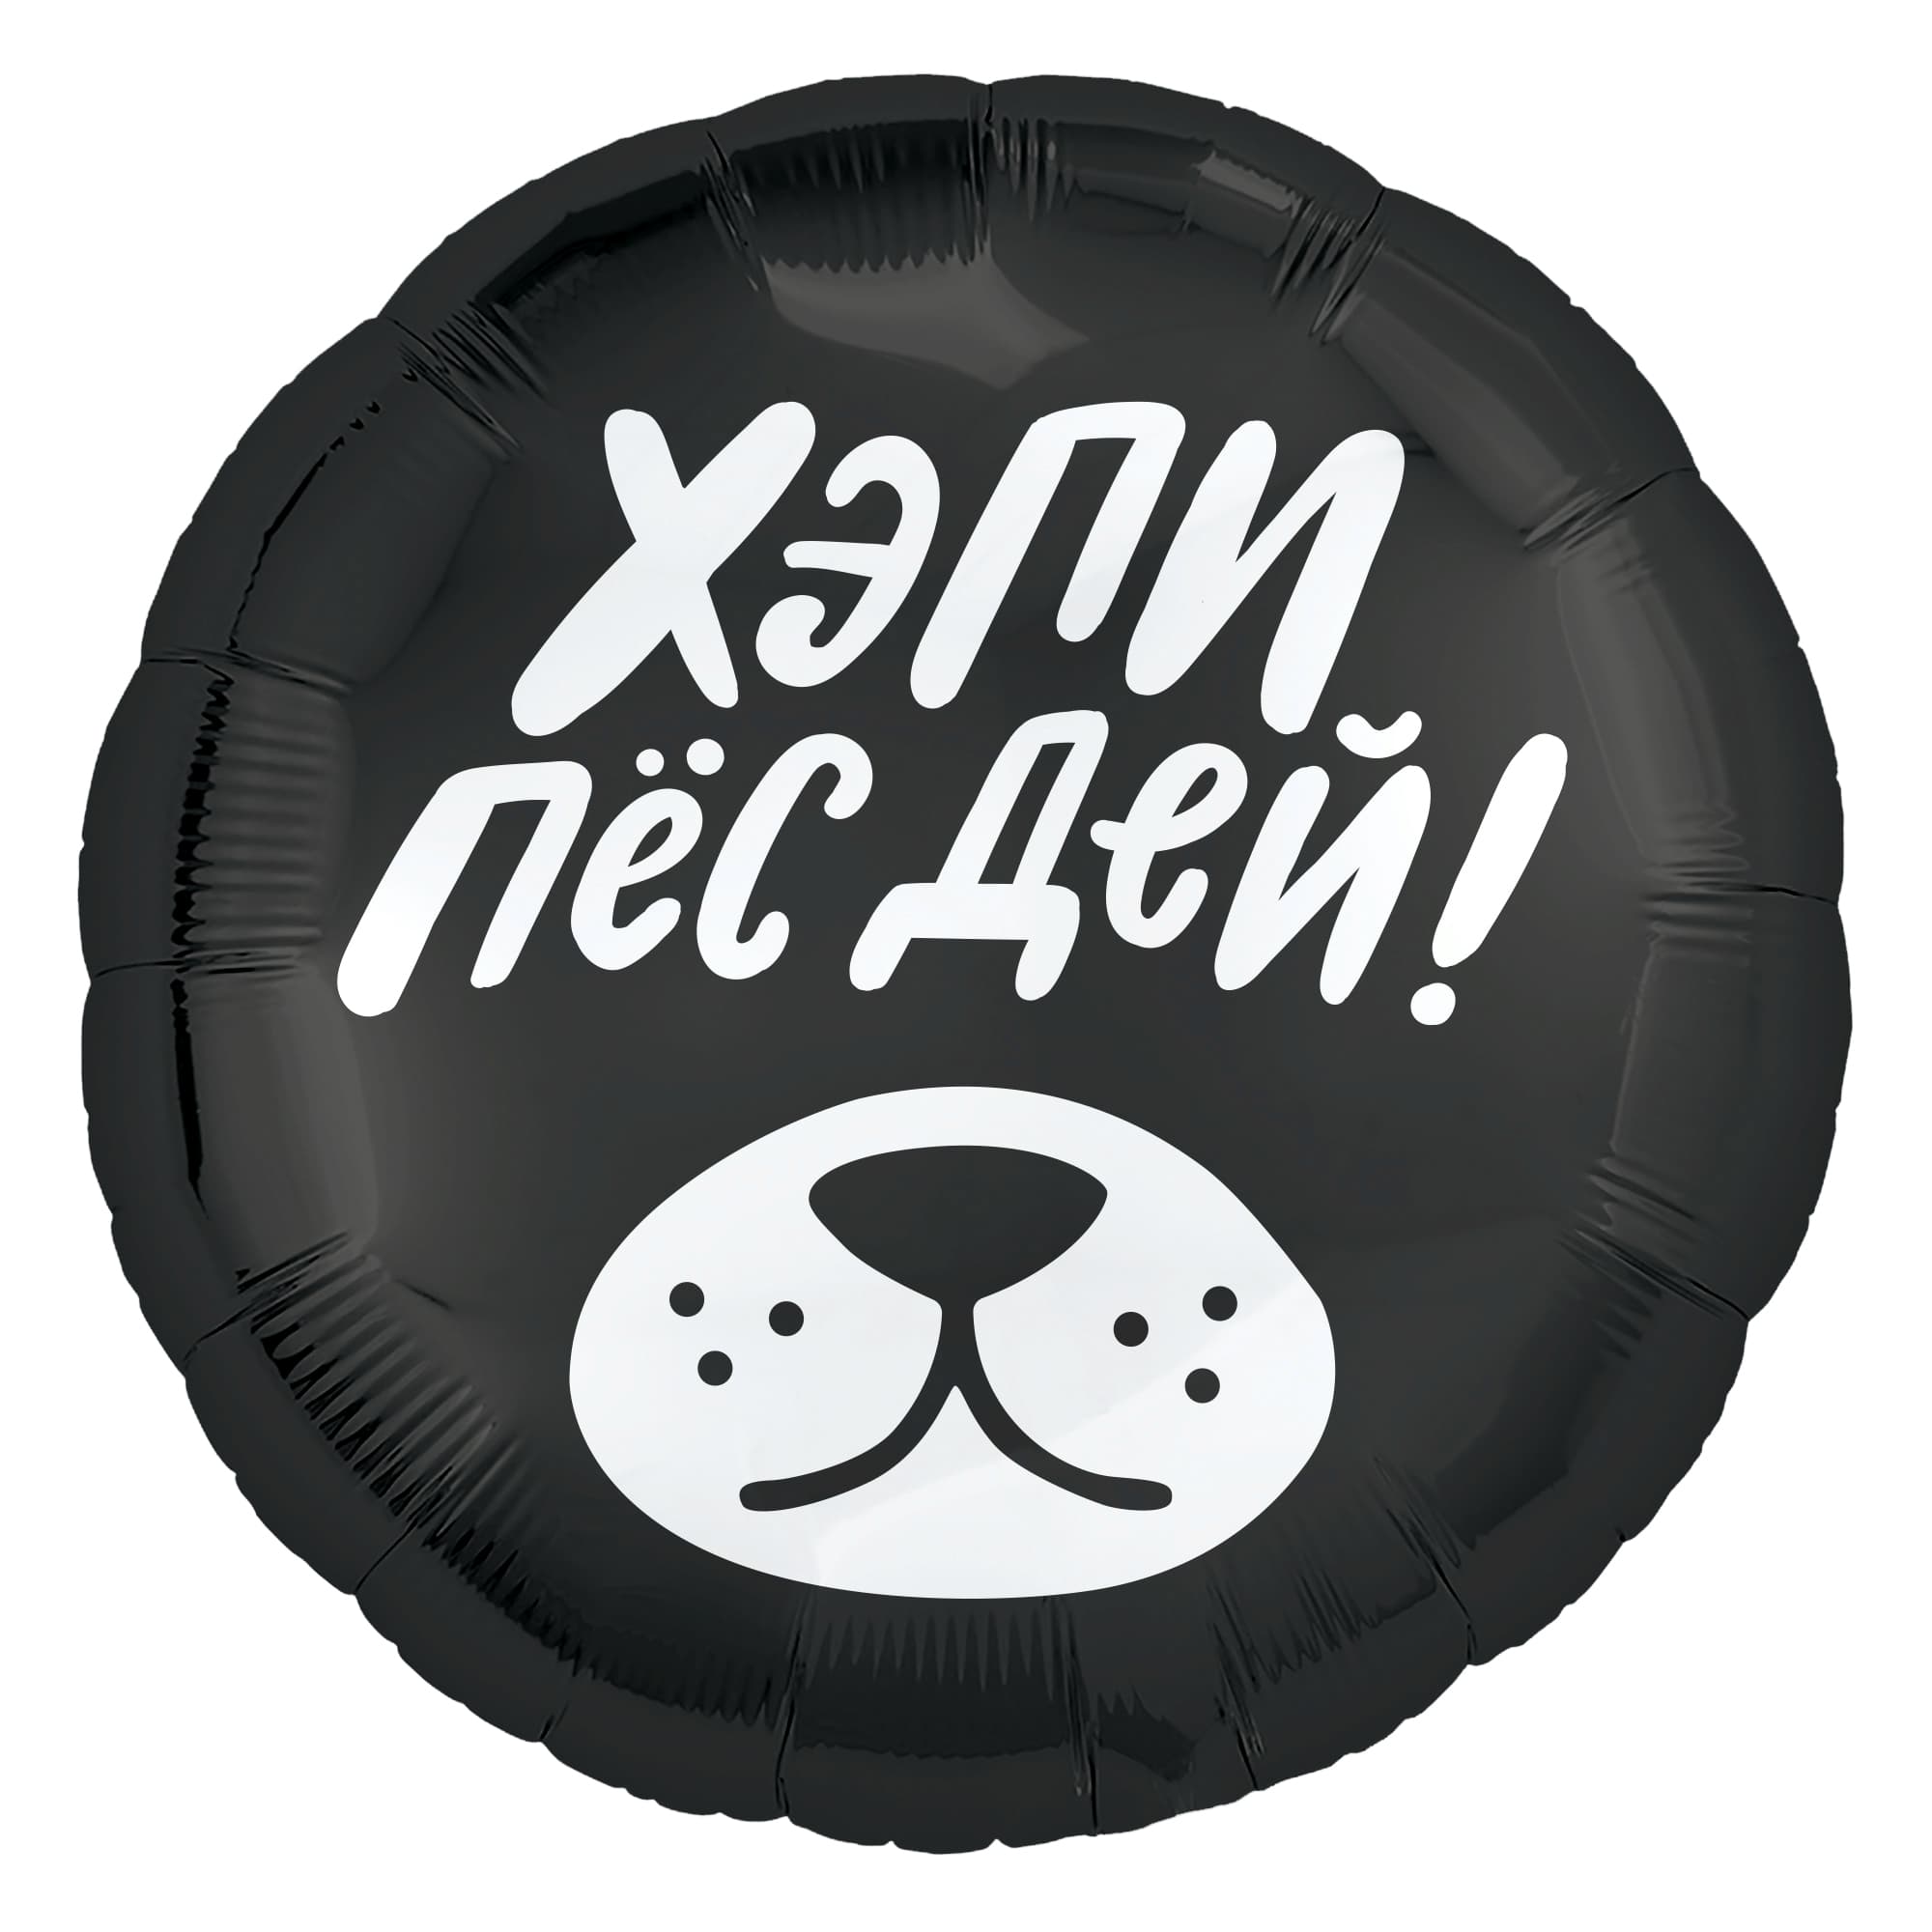 Фольгированный шар, круг, Хэпи Пёс Дей! черный, 46 см